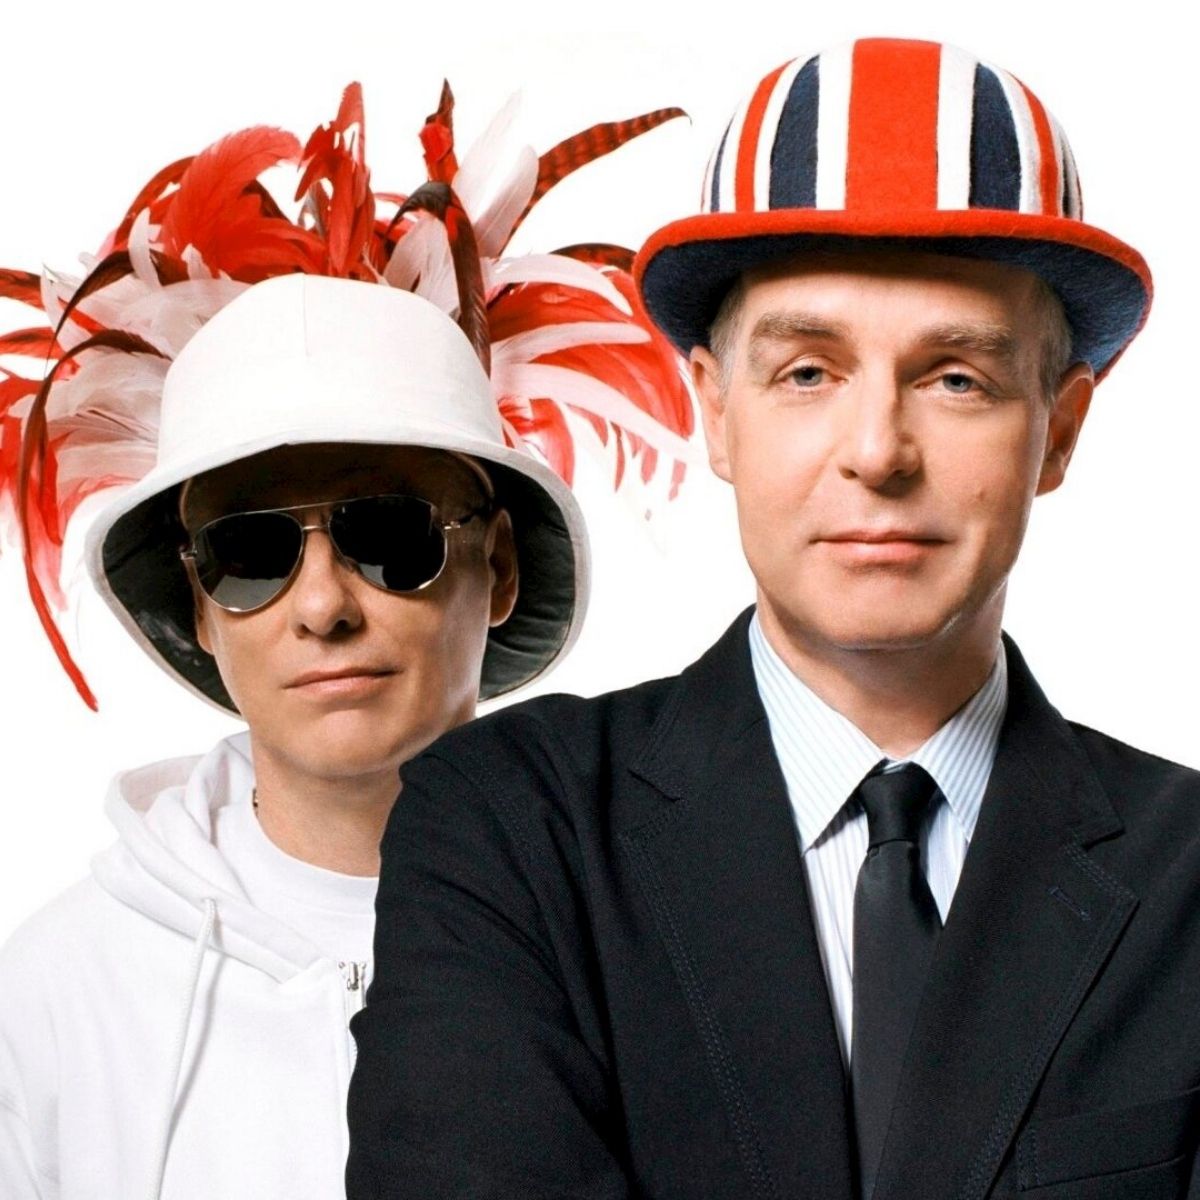 «Pet Shop Boys» на обложке билборда к своему концерту в Цюрихе